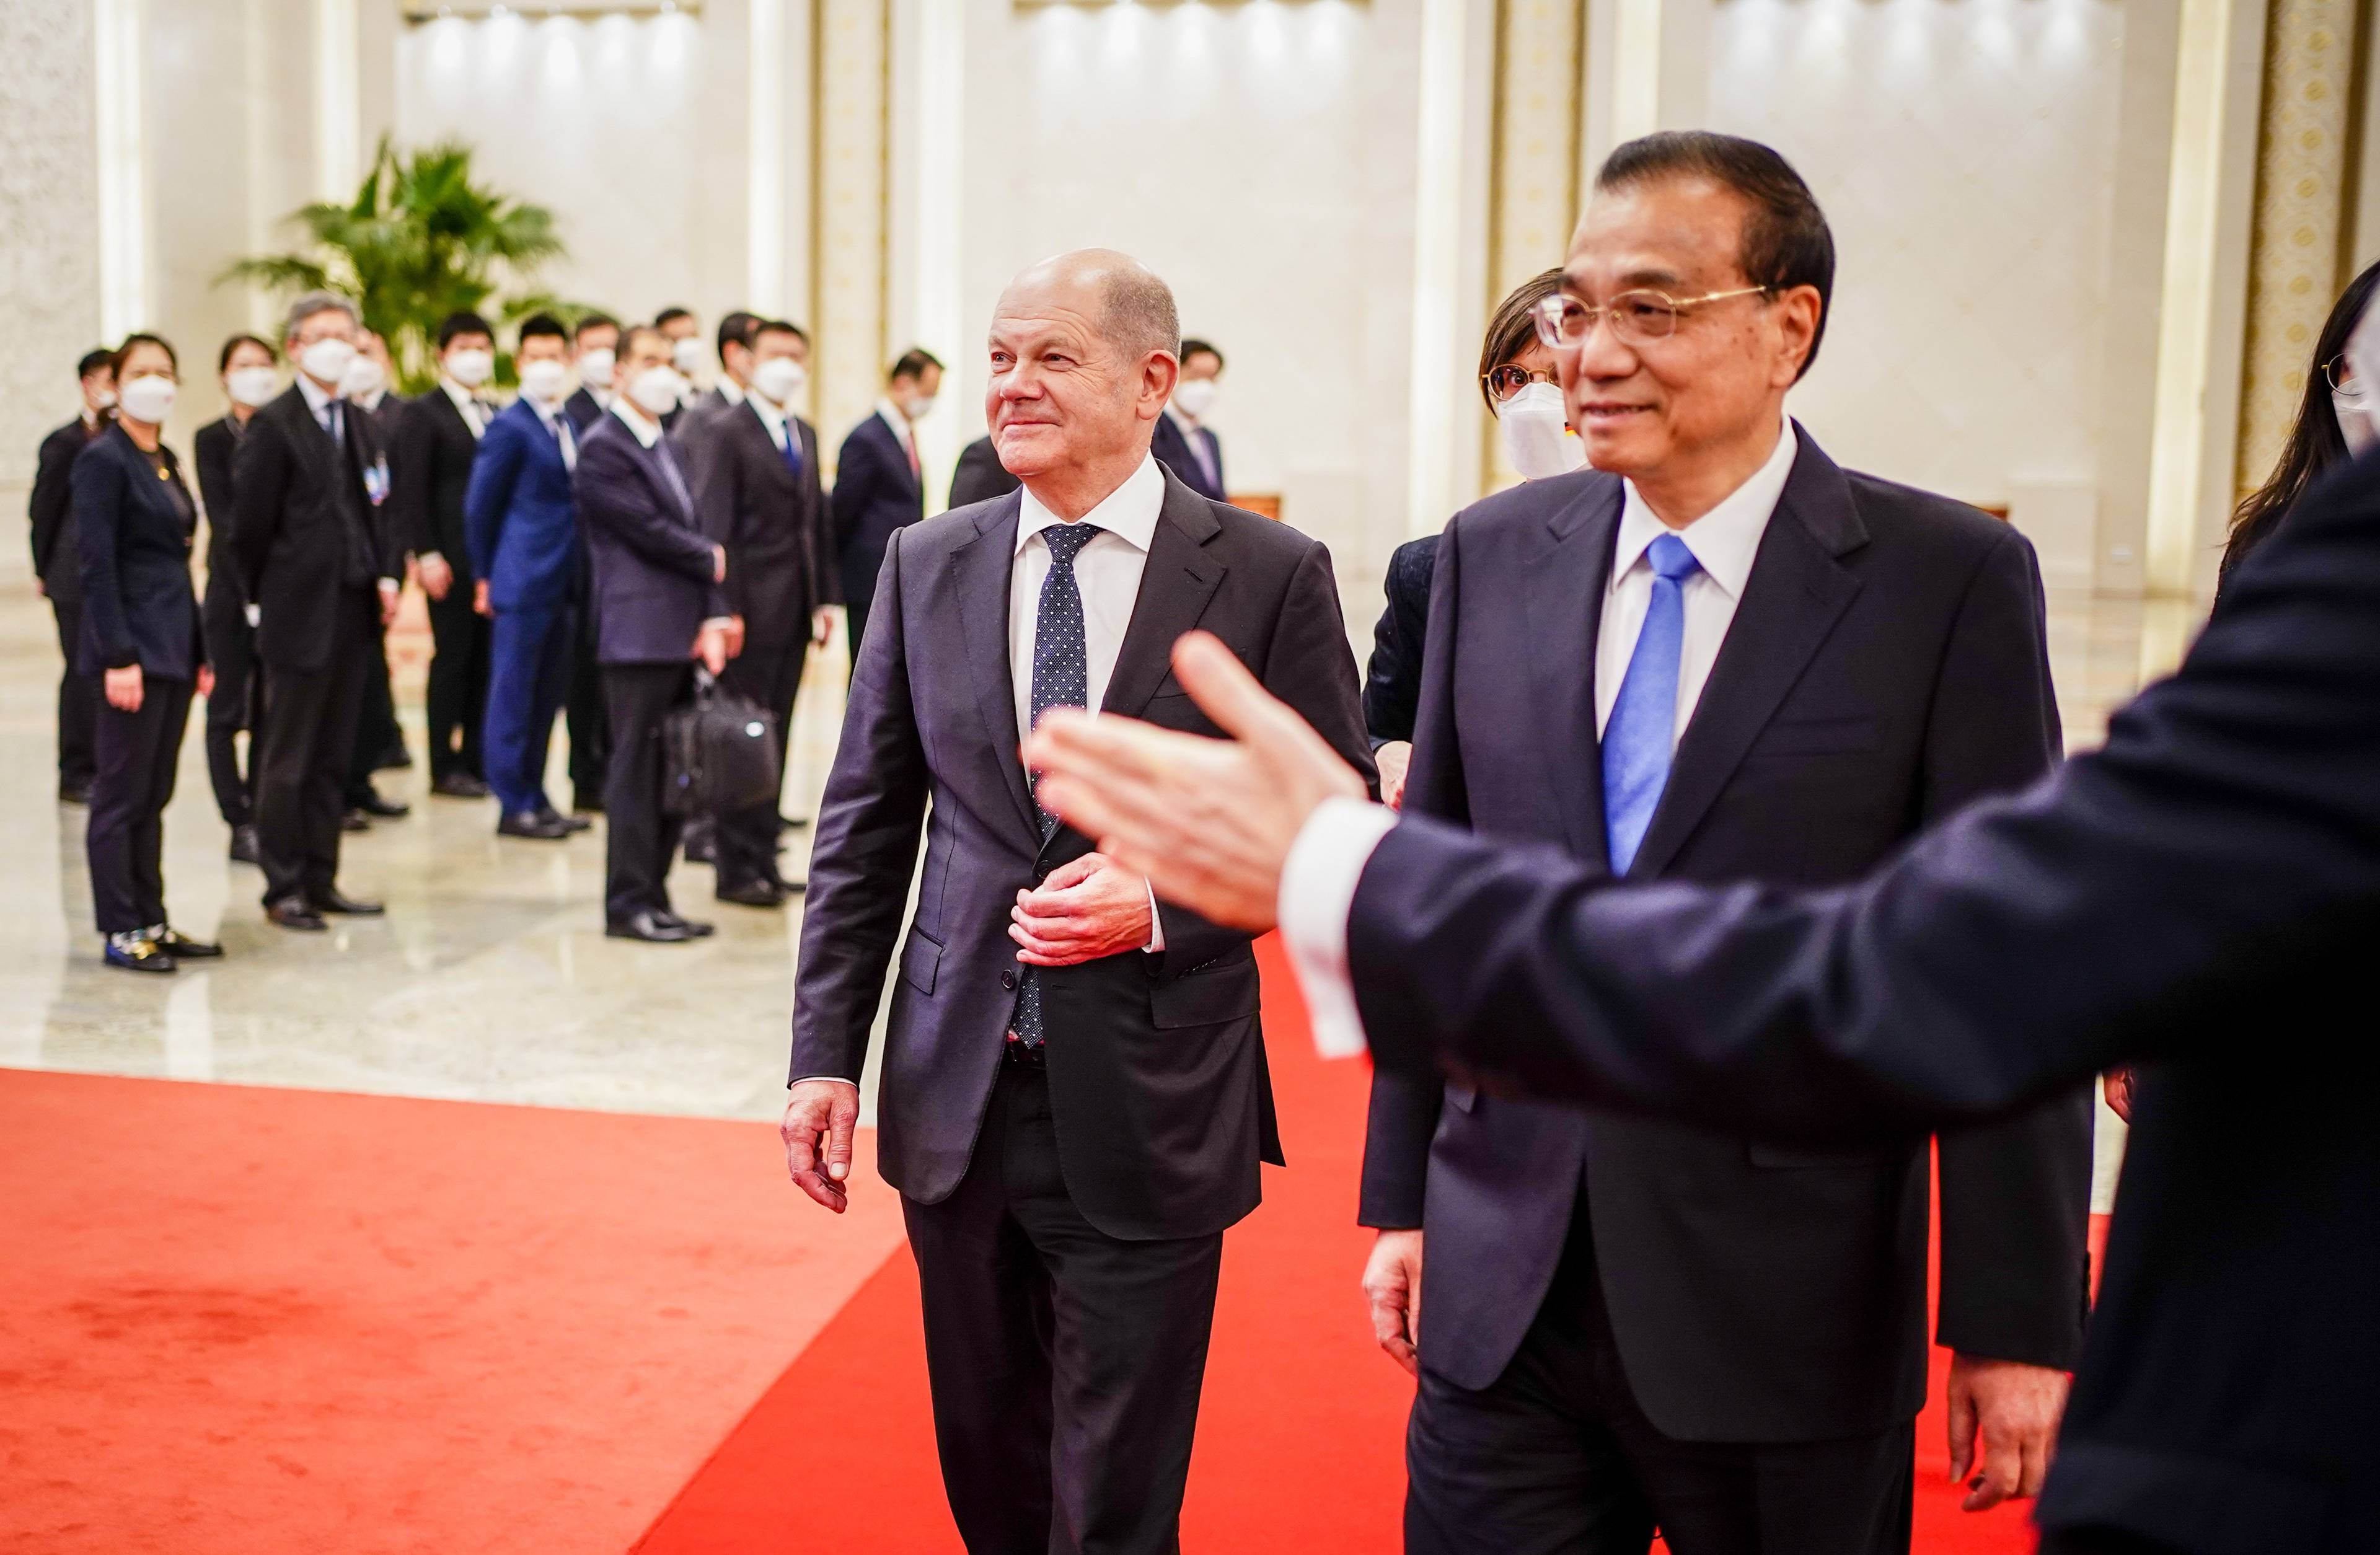 Wizytujący kanclerz Niemiec Olaf Scholz (2. R) jest przyjmowany przez chińskiego premiera Li Keqiang (R) w Wielkiej Hali Ludowej w Pekinie 4 listopada 2022 r.